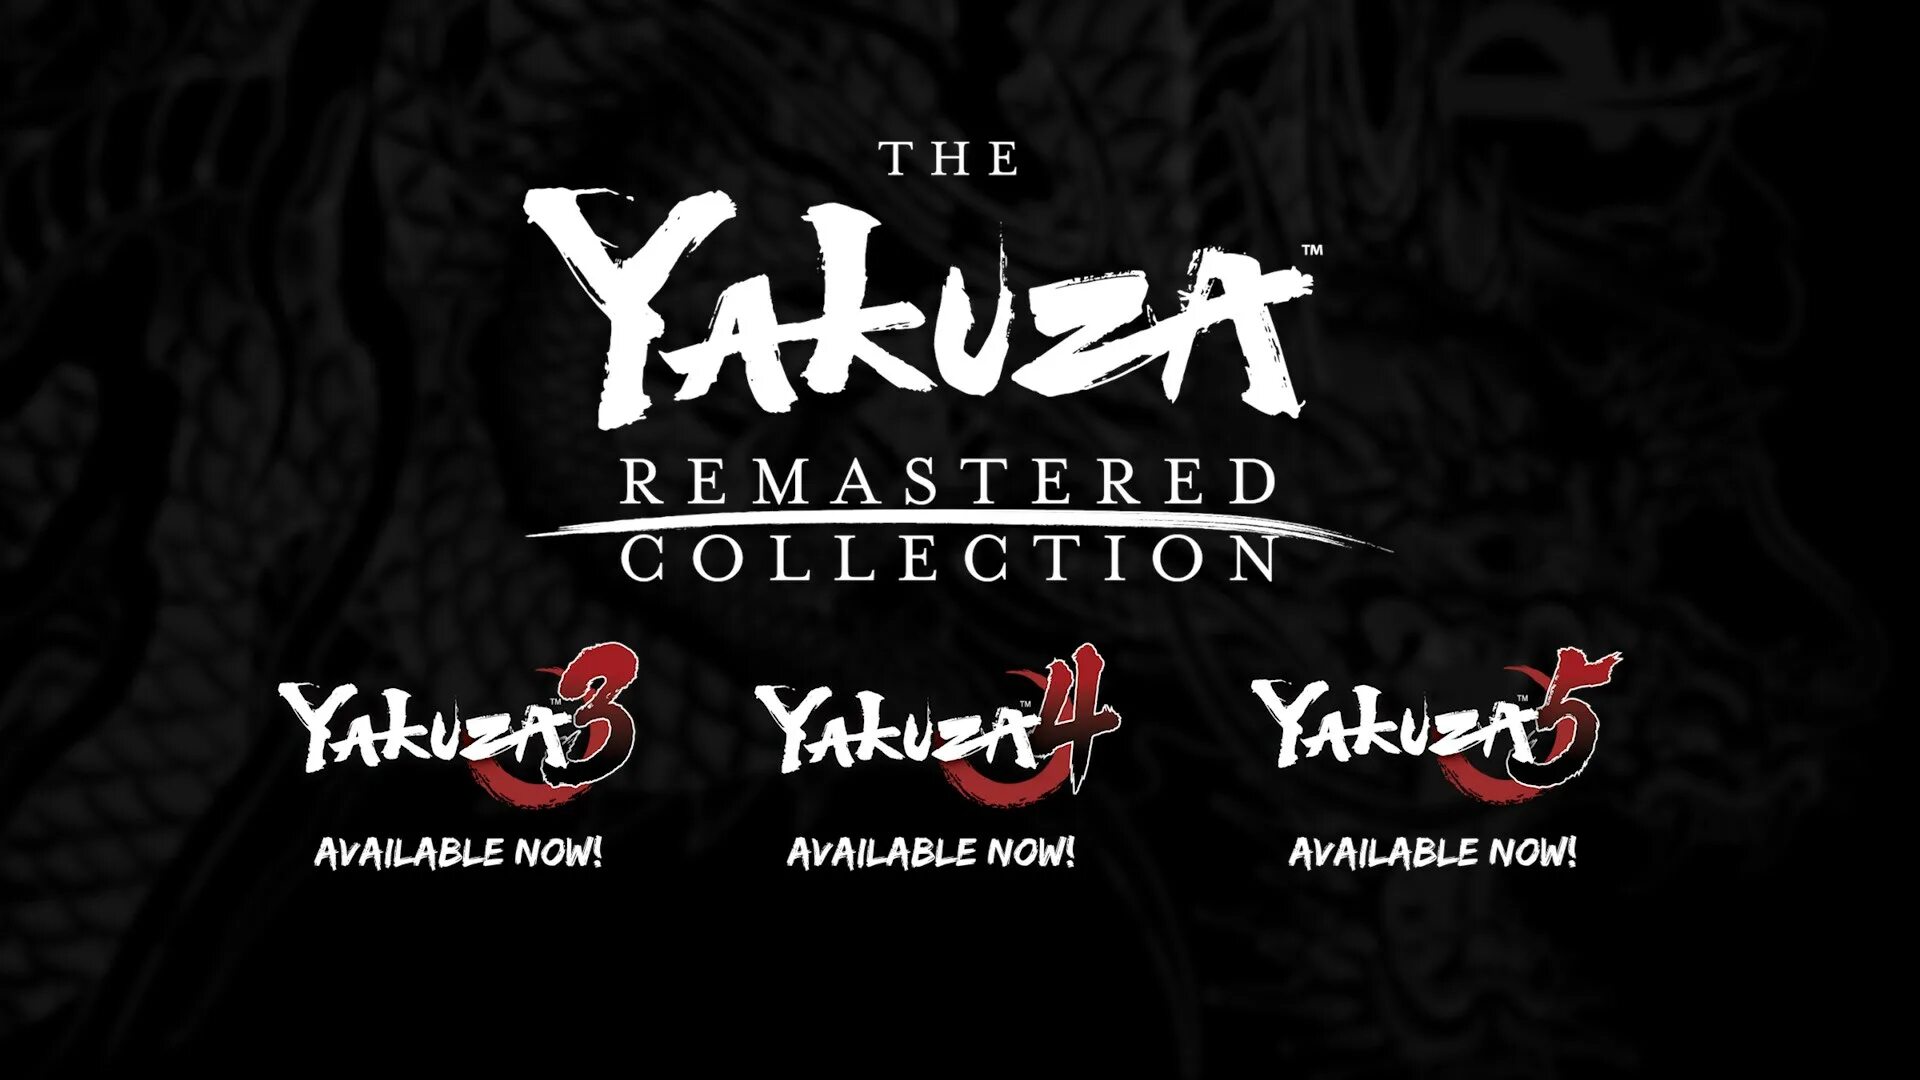 Yakuza Remastered collection ps4. Yakuza 3 Remastered. Yakuza collection Xbox. The Yakuza Remastered collection.